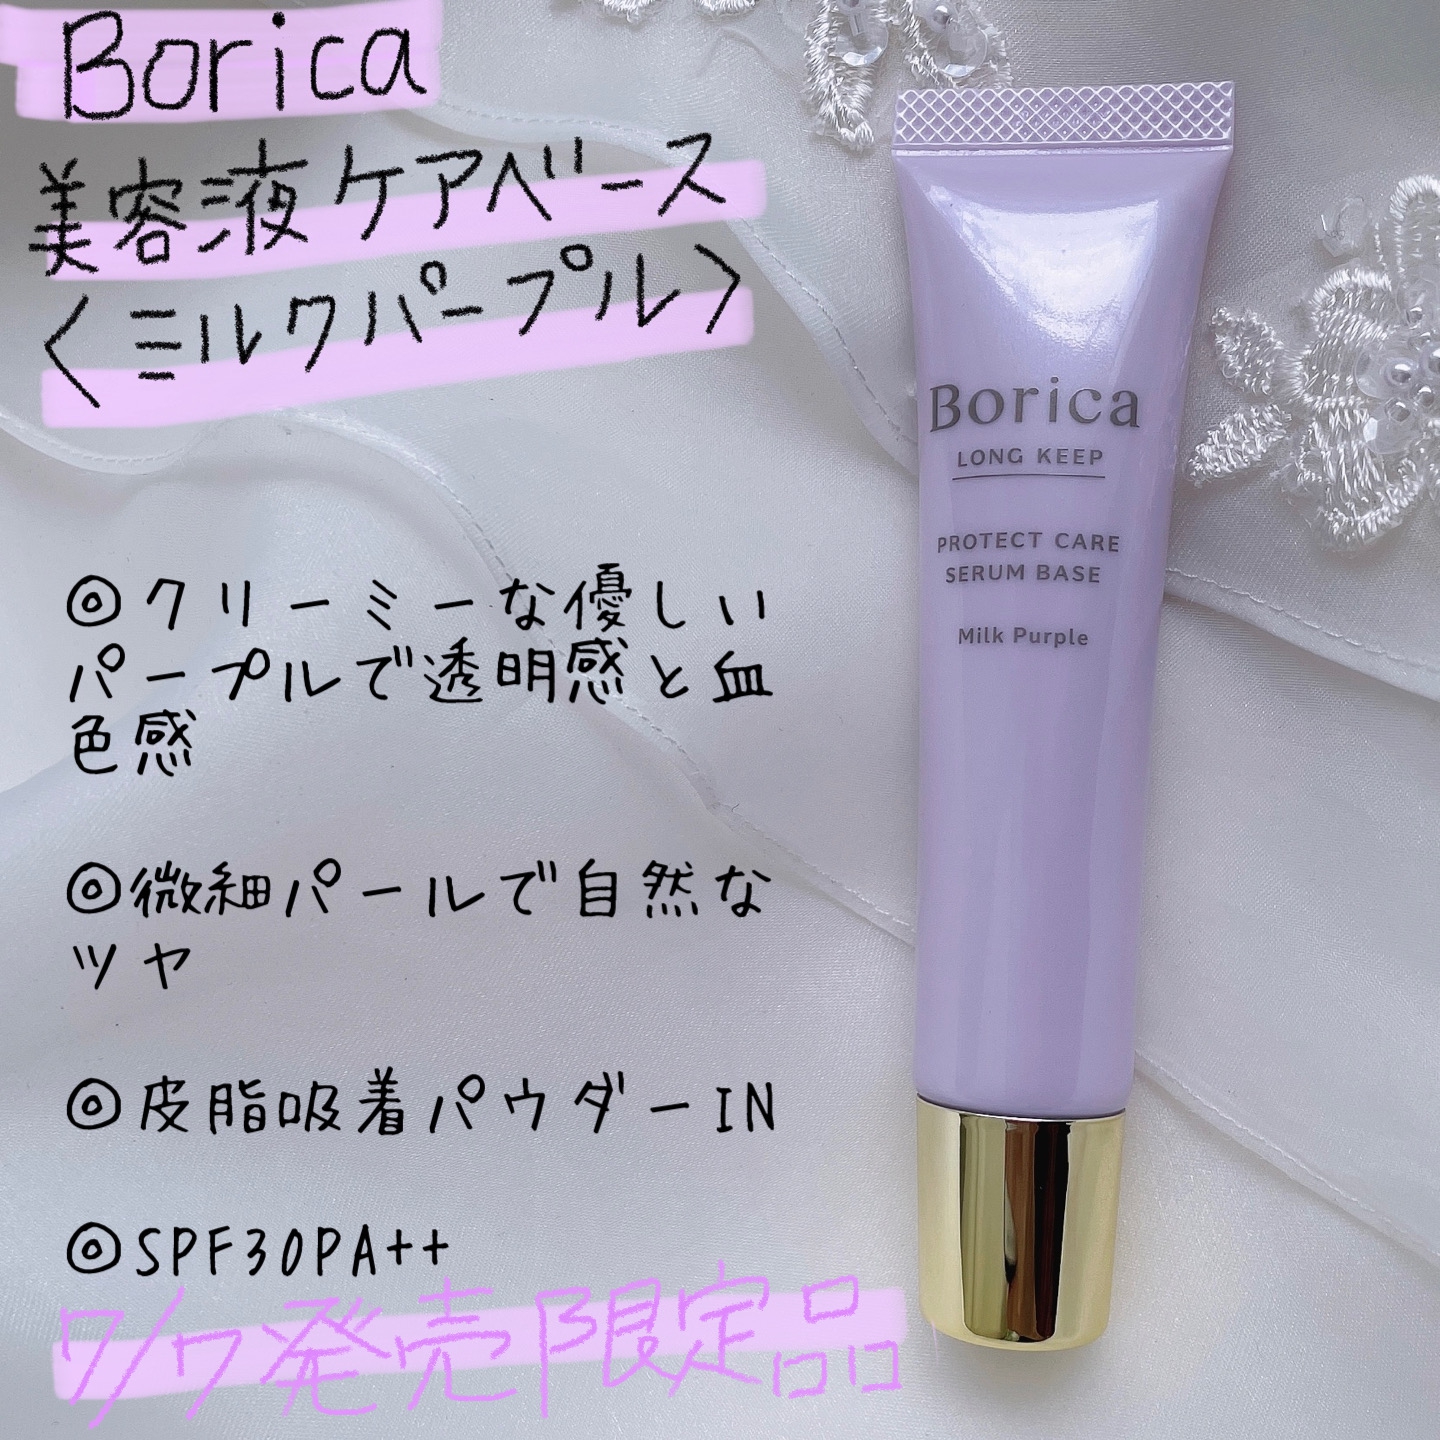 Borica(ボリカ) くずれ防止 美容液ケアベースを使ったなゆさんのクチコミ画像2